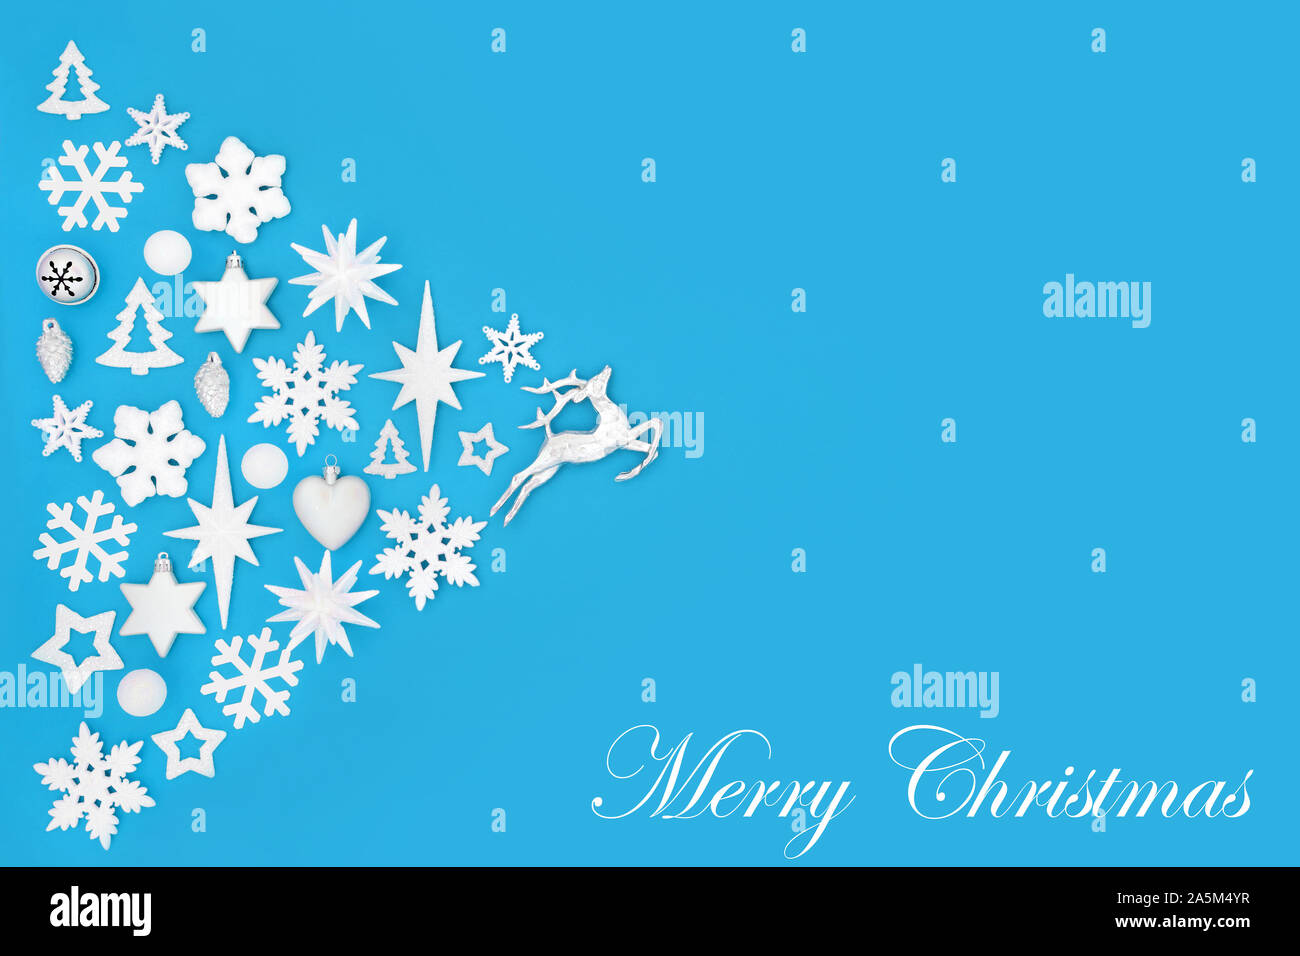 Joyeux Noël résumé fond blanc et argent avec des décorations de l'arbre et les symboles sur bleu avec titre. Thème traditionnel pour les fêtes. Banque D'Images